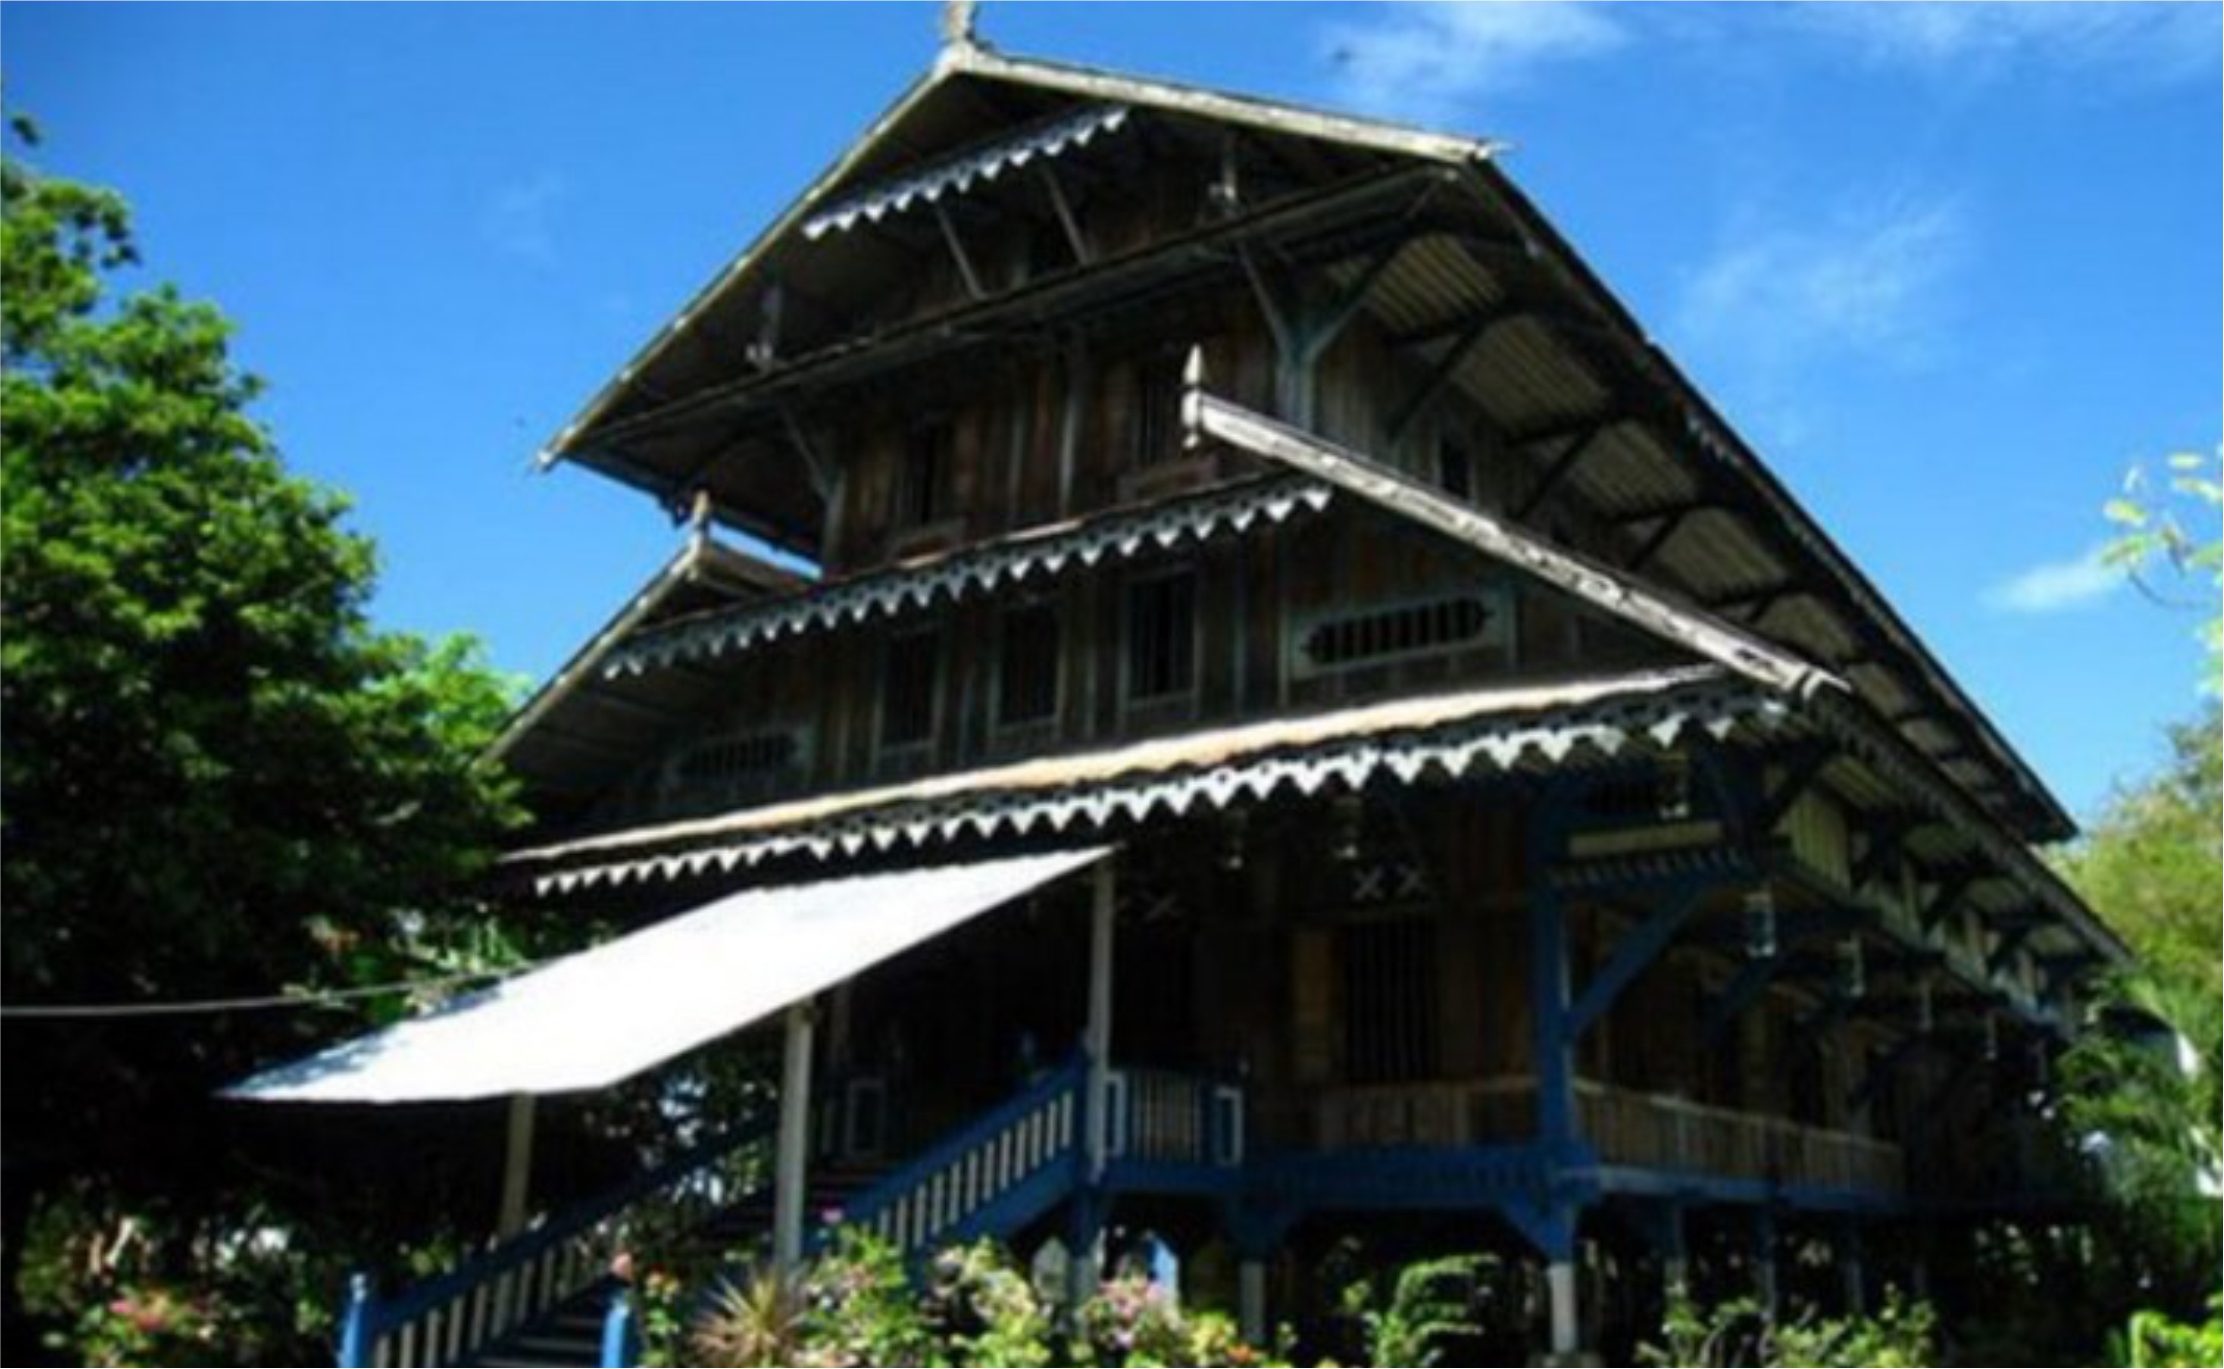 Rumah Adat Provinsi Sulawesi Tenggara Banua Tada Pewarta Nusantara